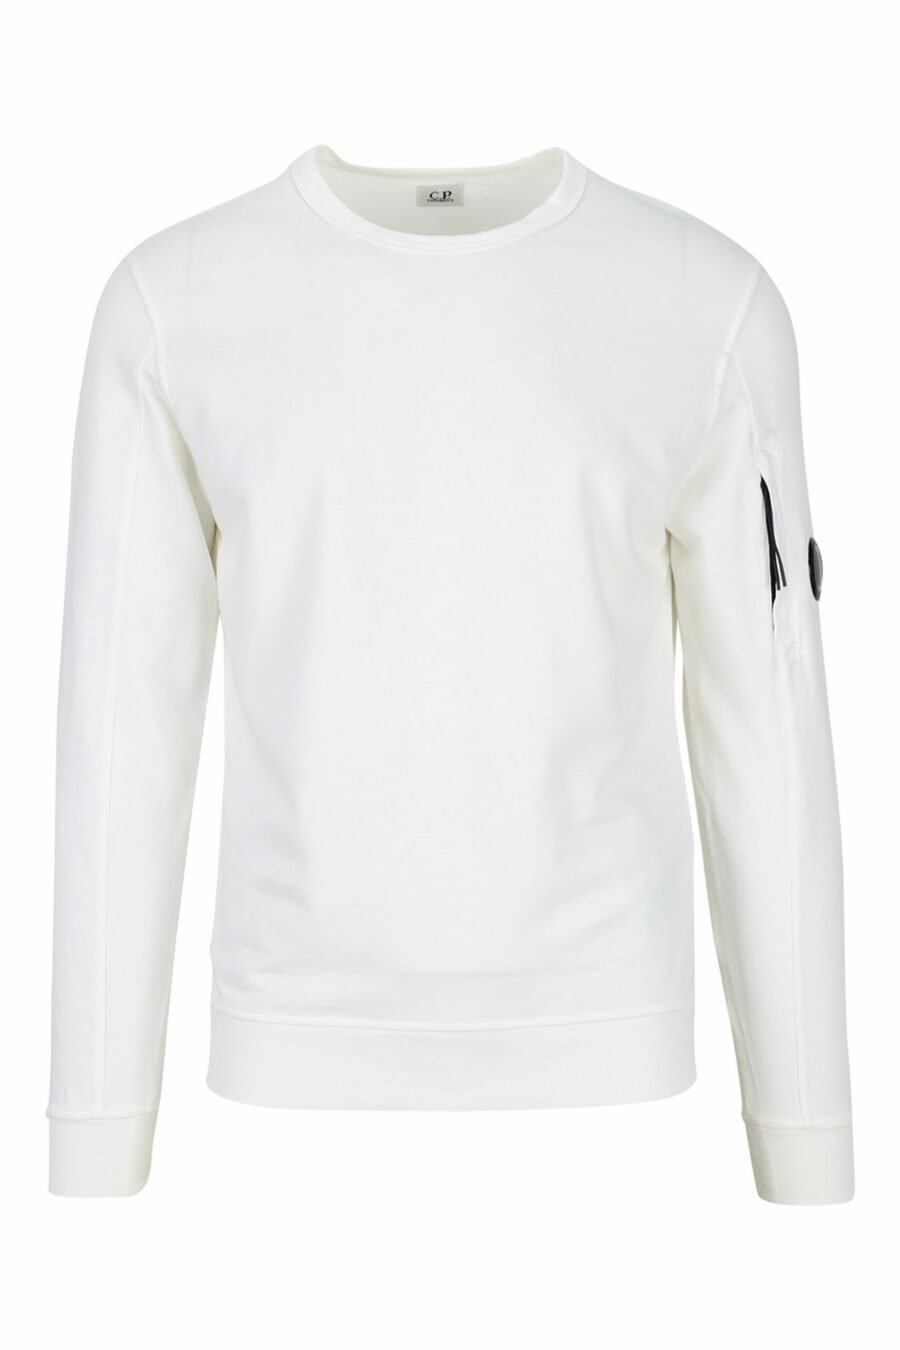 Weißes Sweatshirt mit Minilogue-Seitenlinse - 7620943591705 skaliert